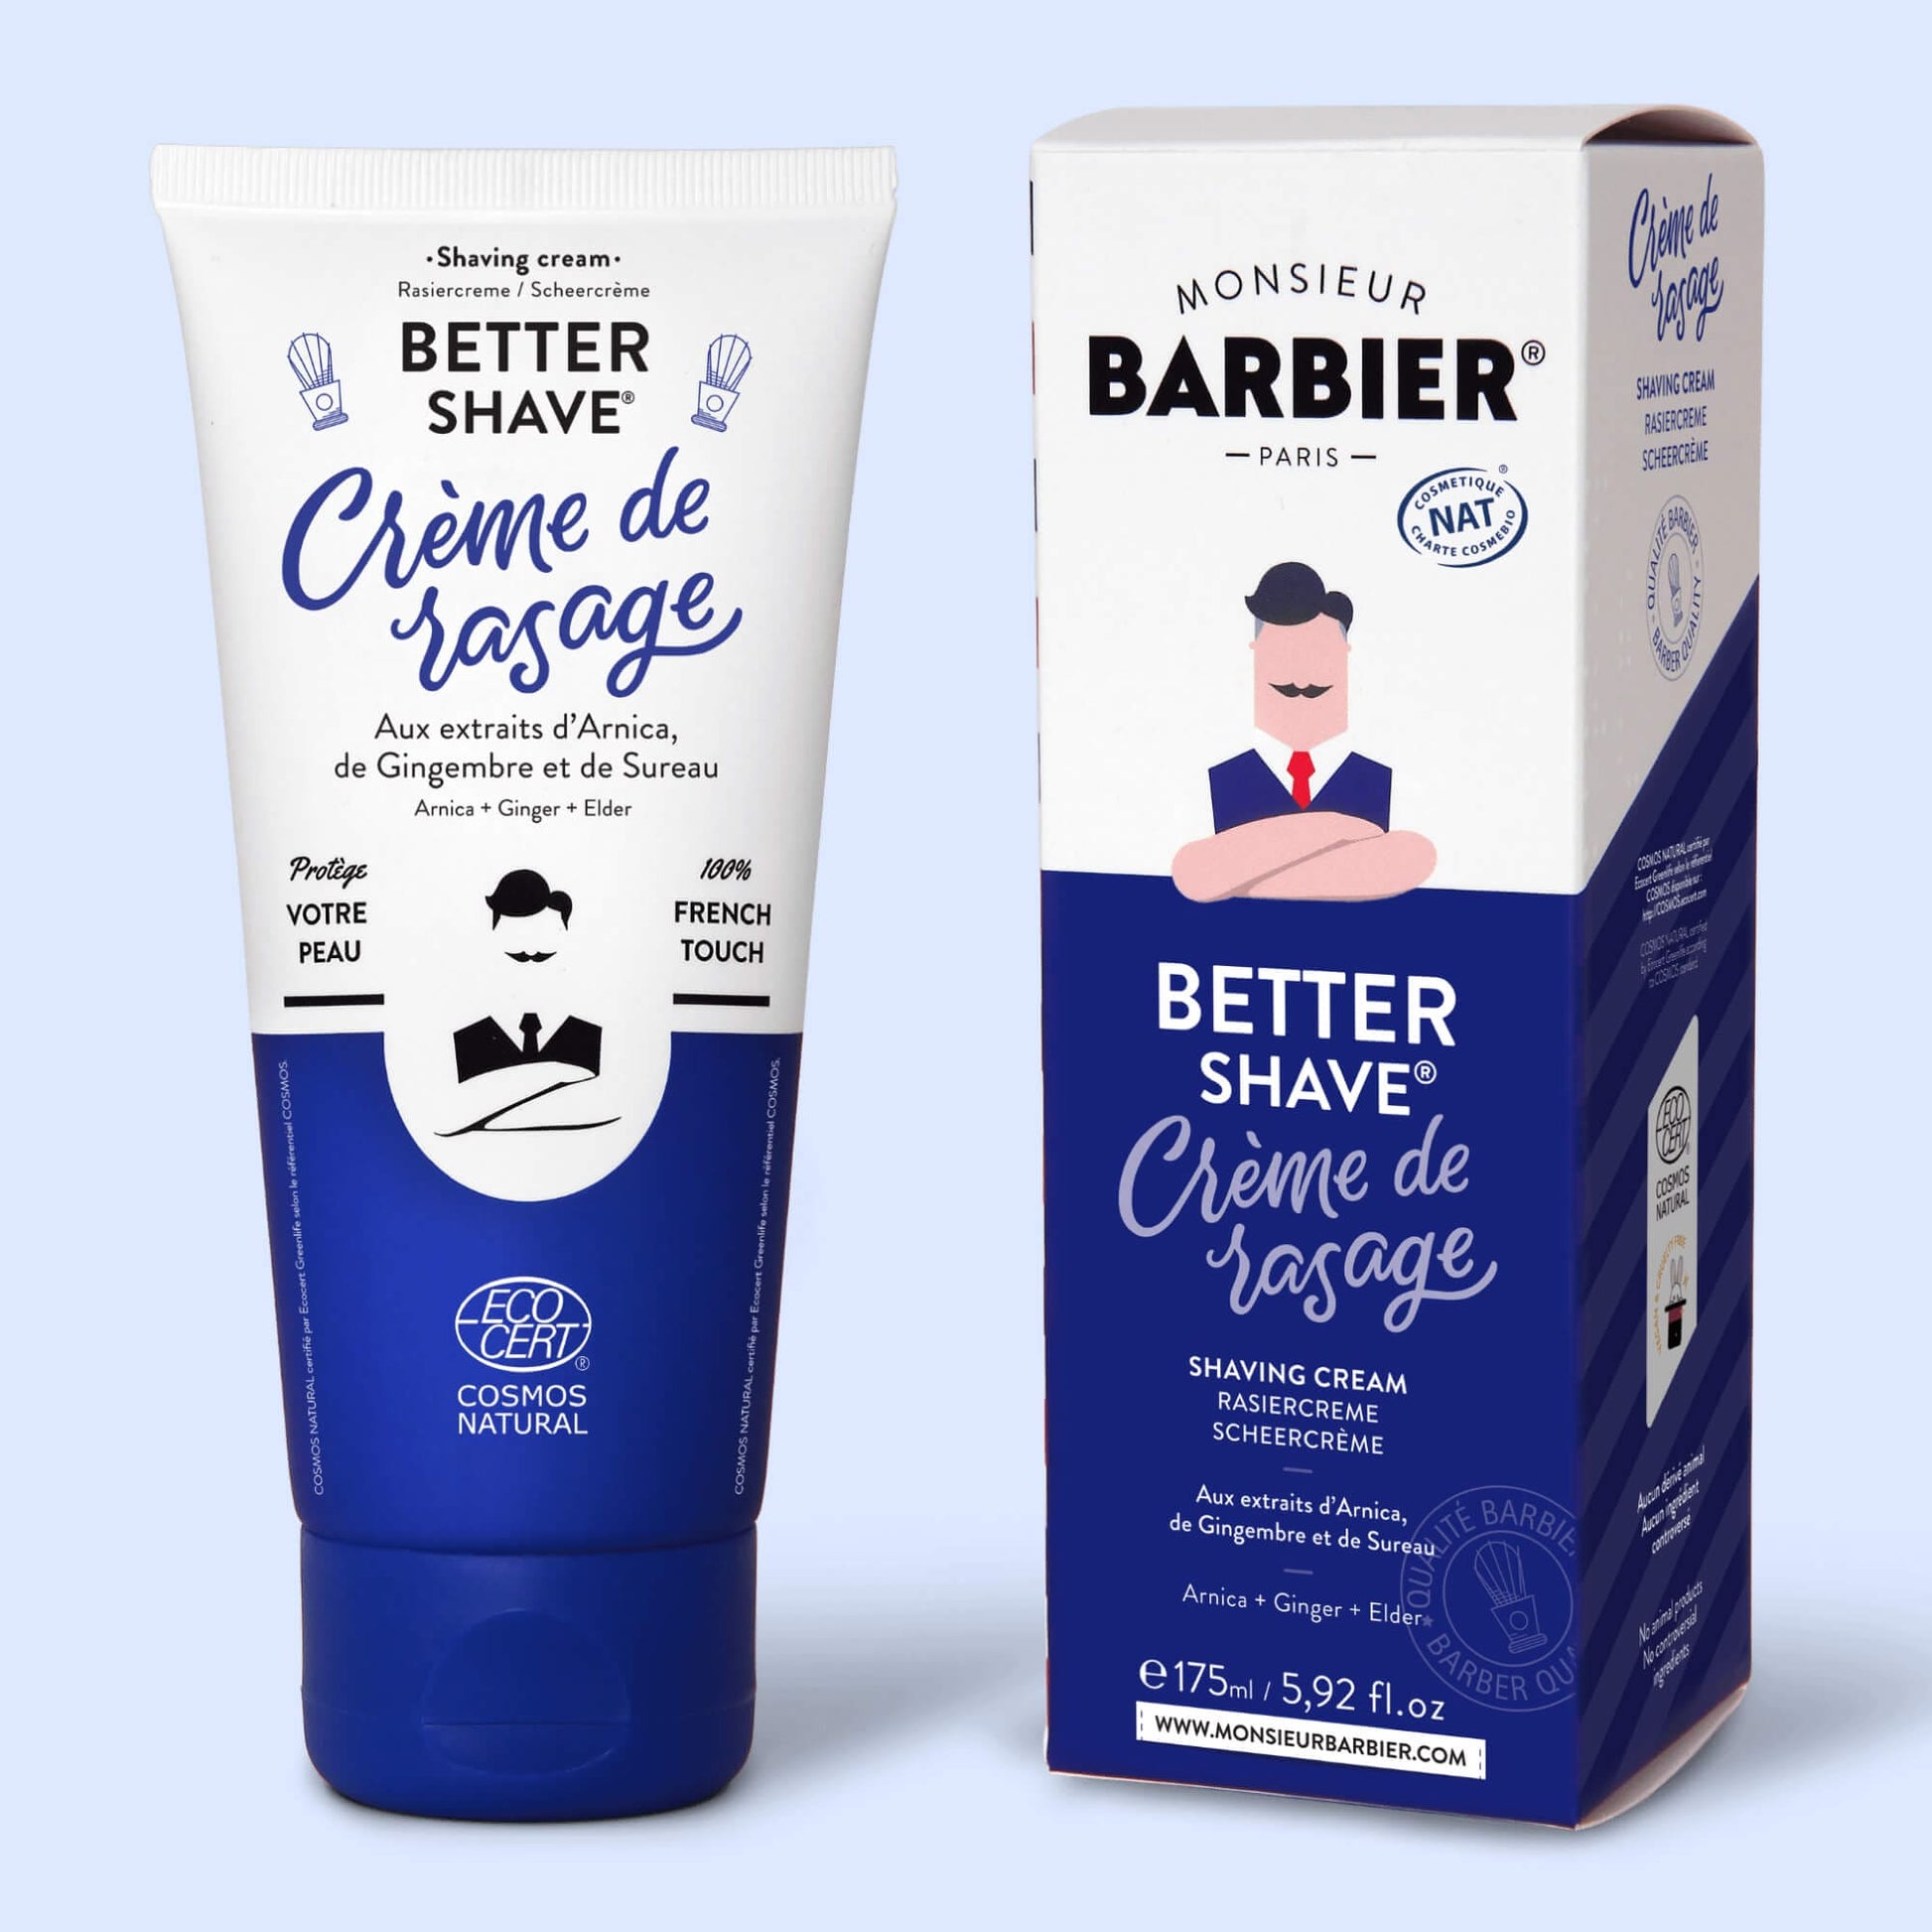 Présentation du tube de crème de rasage Monsieur BARBIER BETTER SHAVE à côté de son emballage, illustrant le produit complet avec des informations détaillées sur les avantages et la composition.